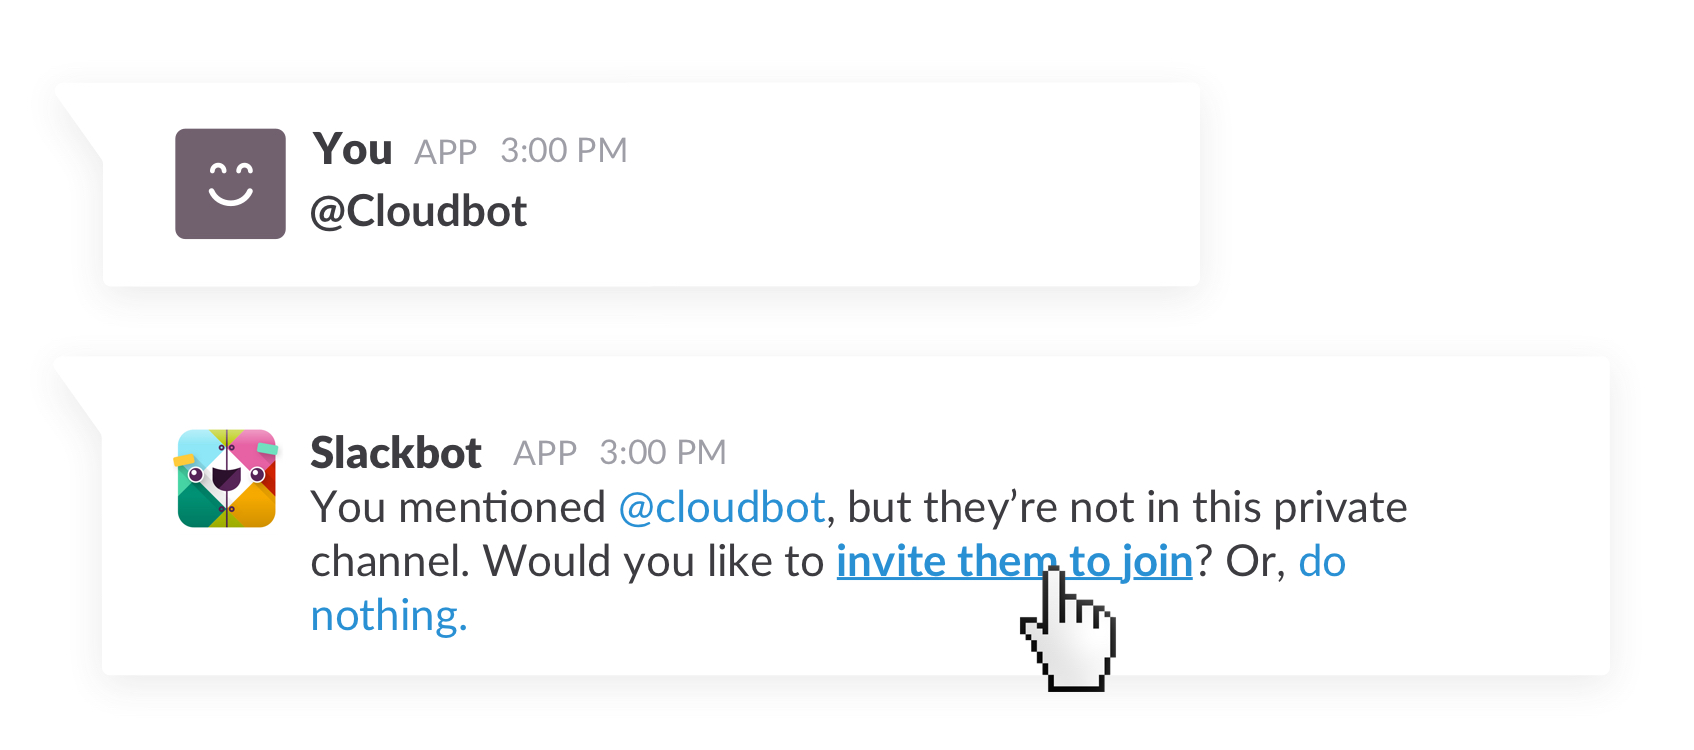 How to setup Cloudbot in Slack